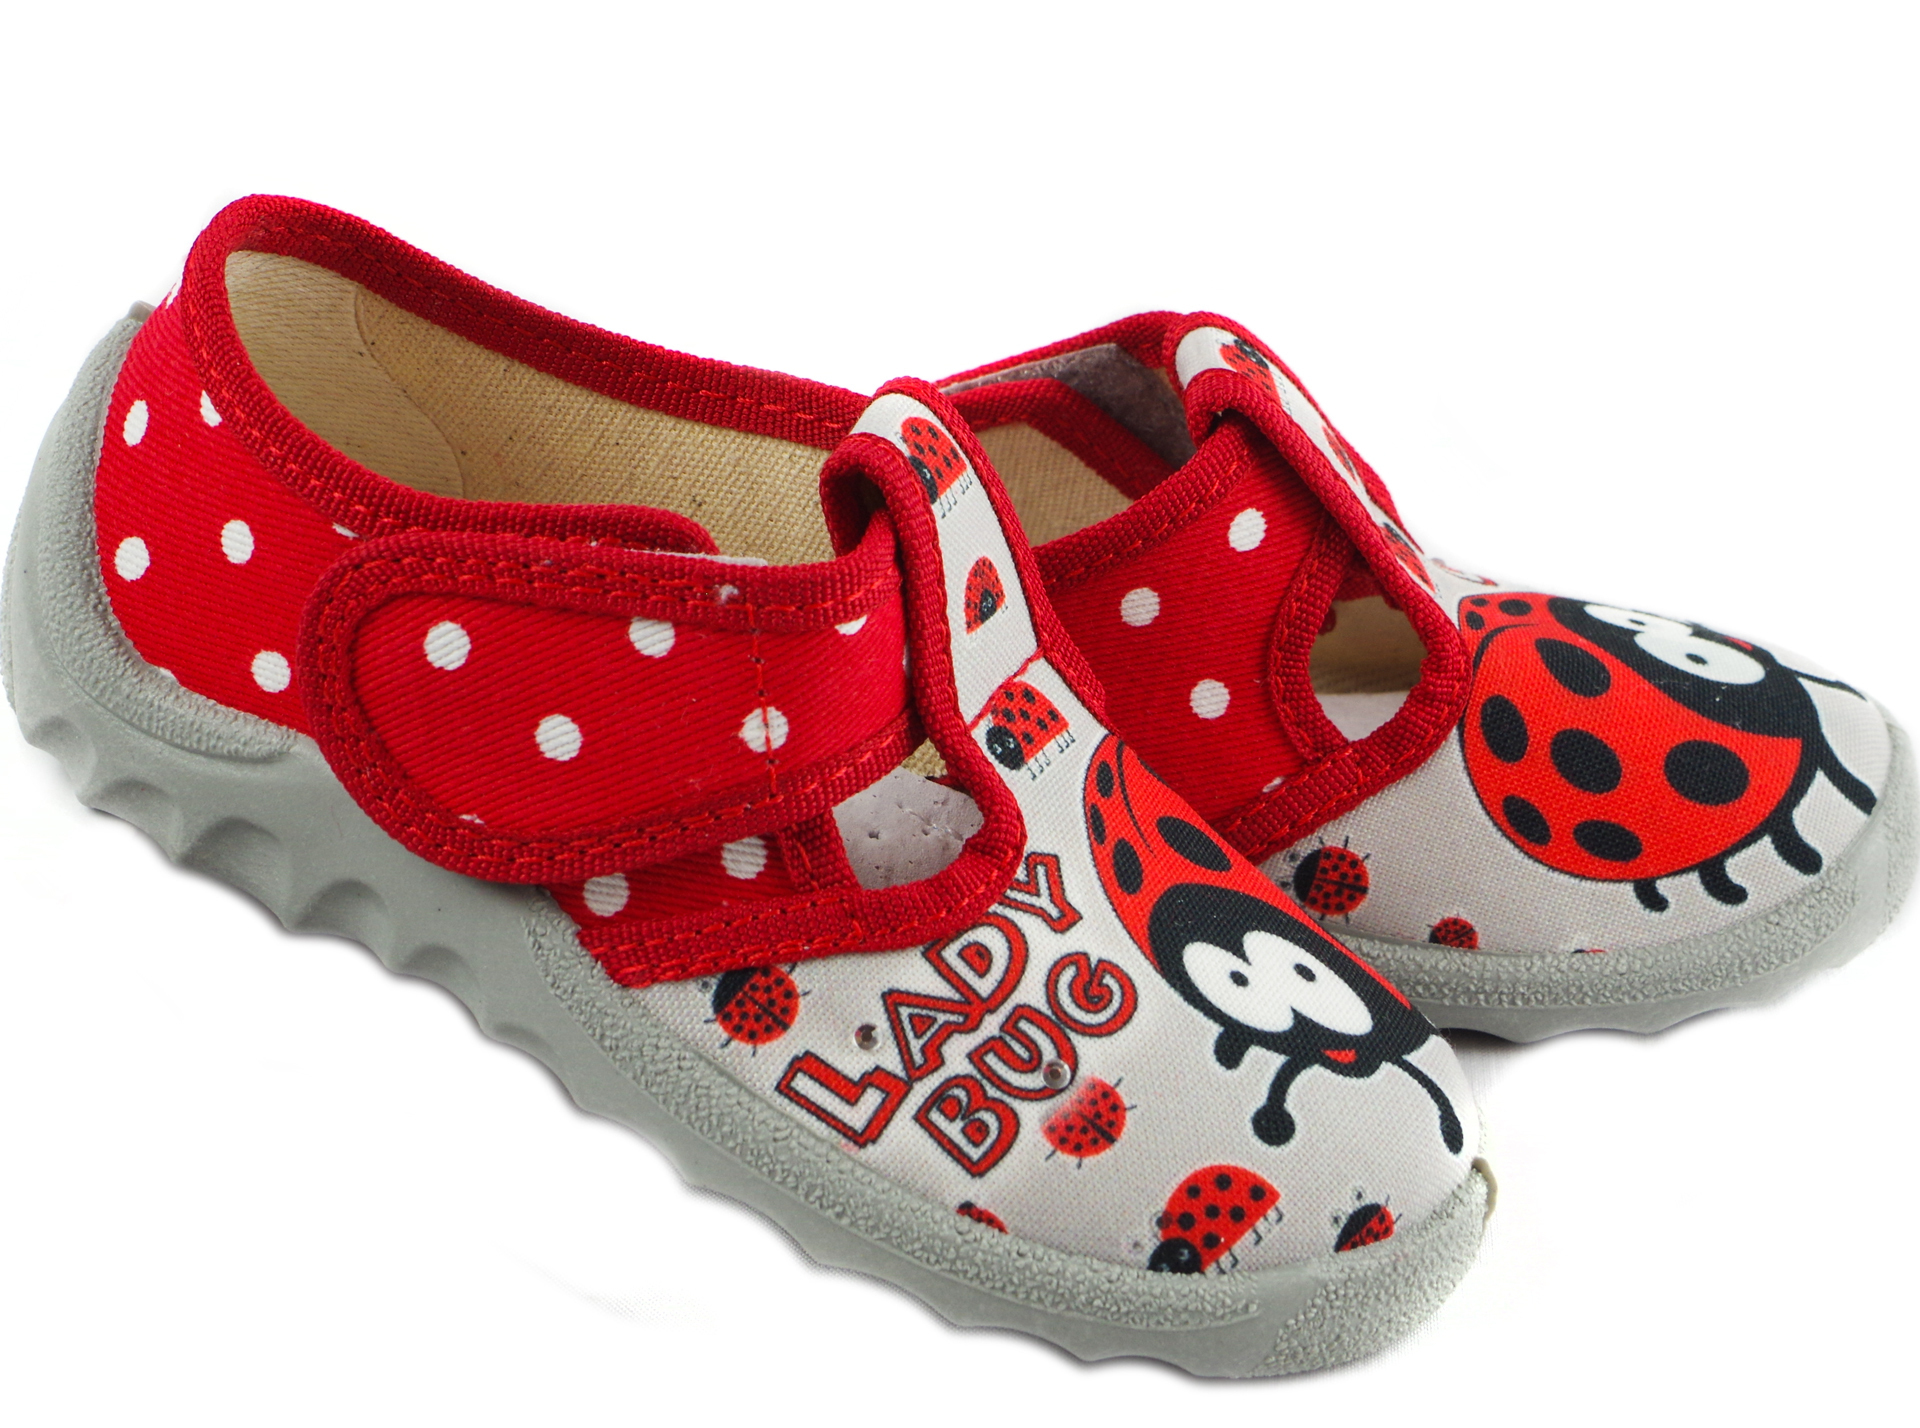 Текстильная обувь для девочек Тапочки Даша Lady Bug (1914) цвет Красный 21-27 размеры – Sole Kids. Фото 2